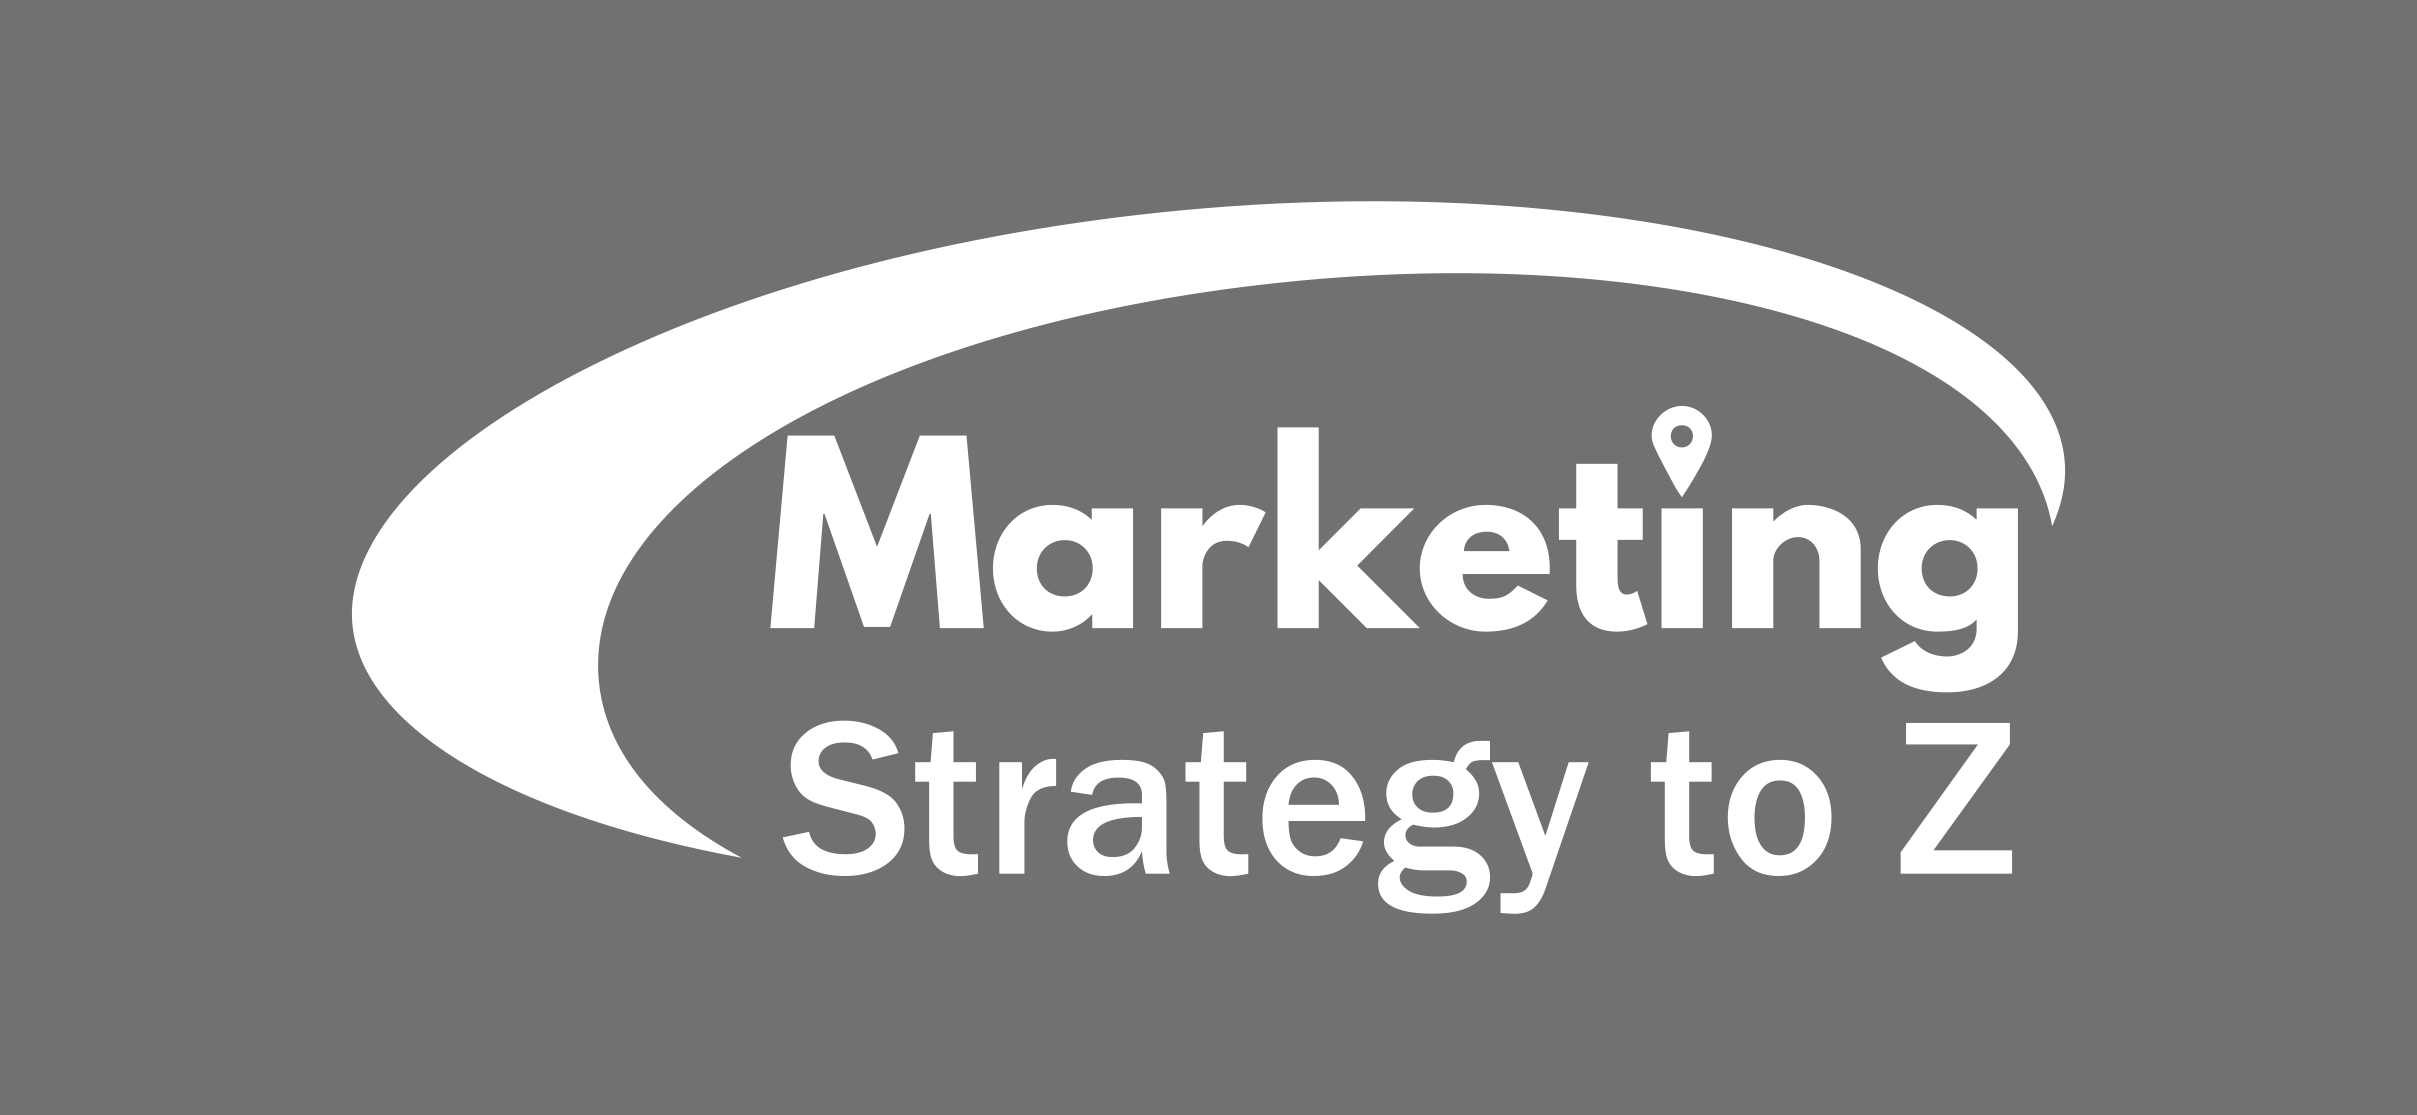 Marketing Strategy to Z